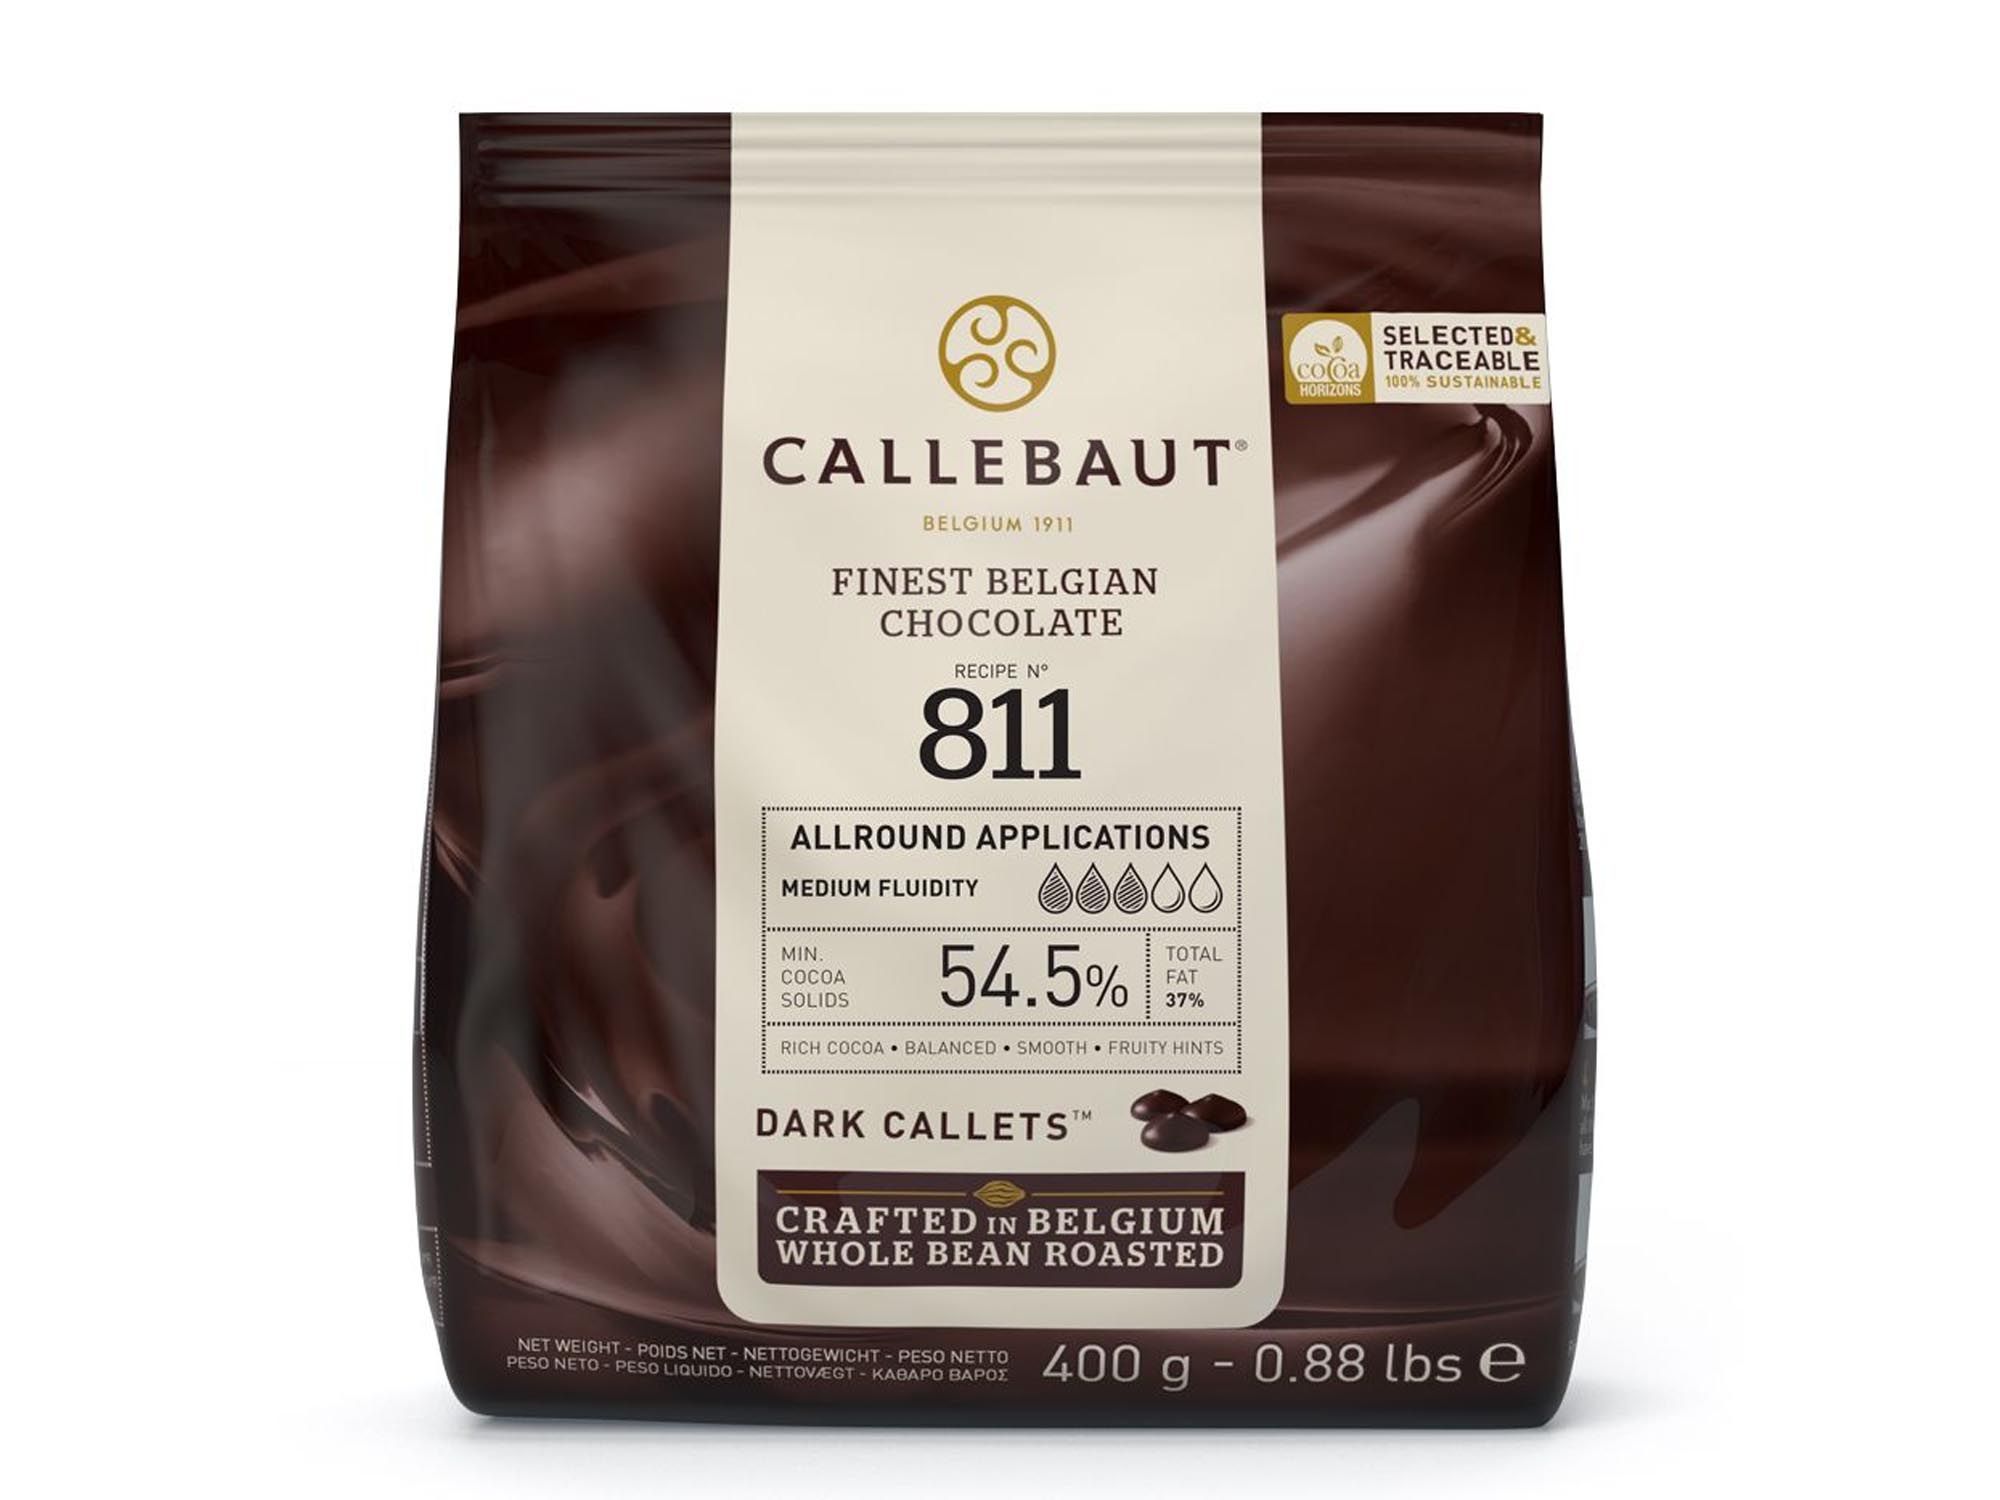 Schokolade Callebaut Dunkel Callets 400g Beutel